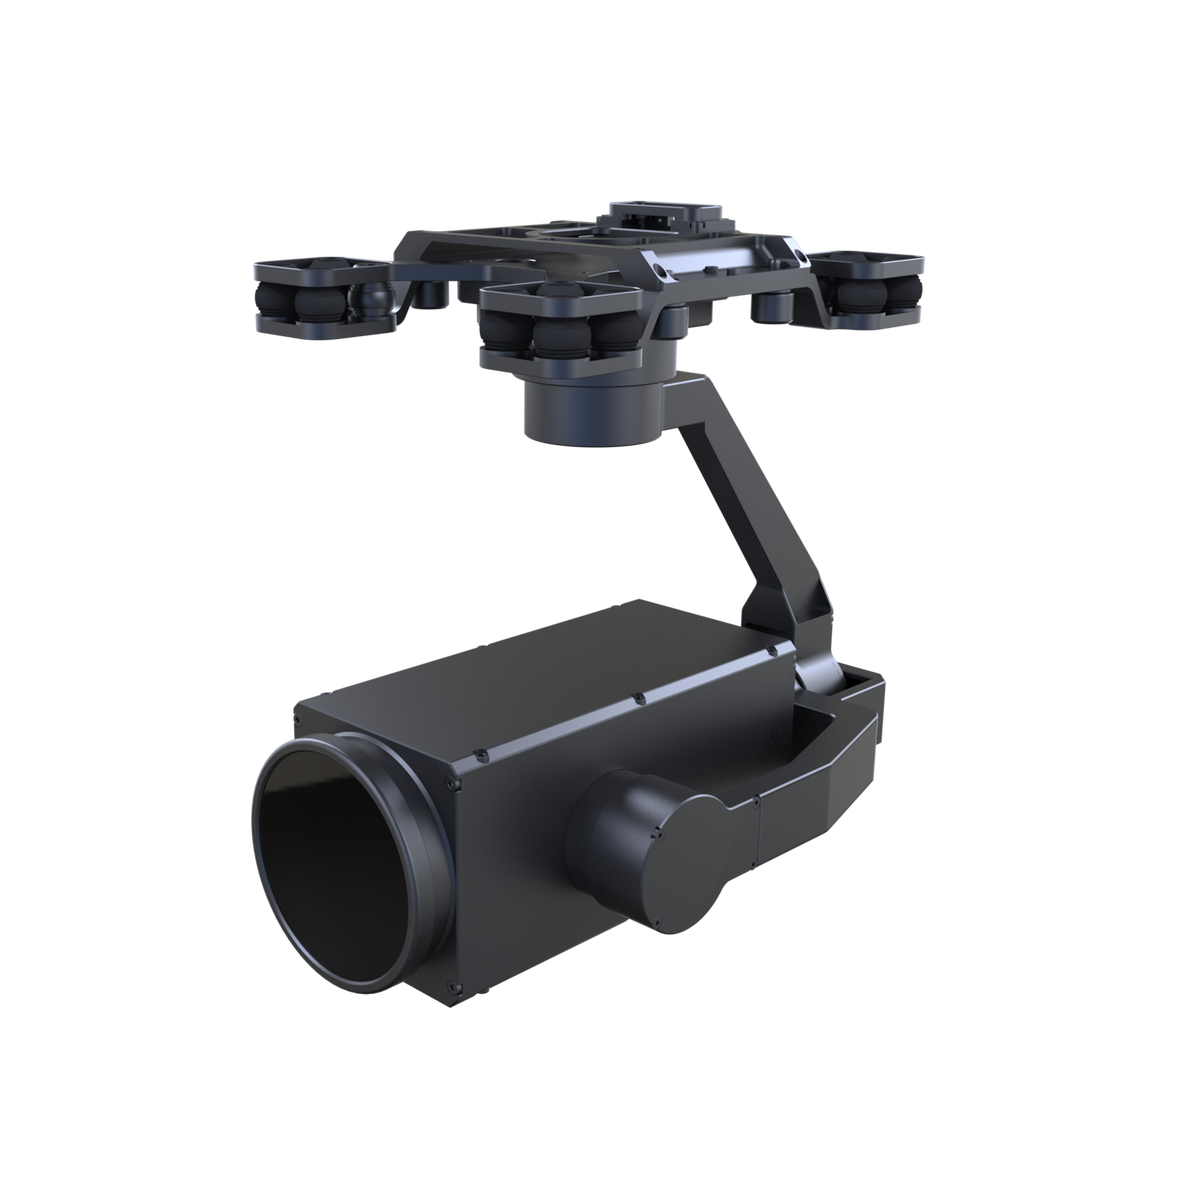 DAHUA UAV-GA-V-8048U-AI 4K 48x PTZ Camera with AI Features